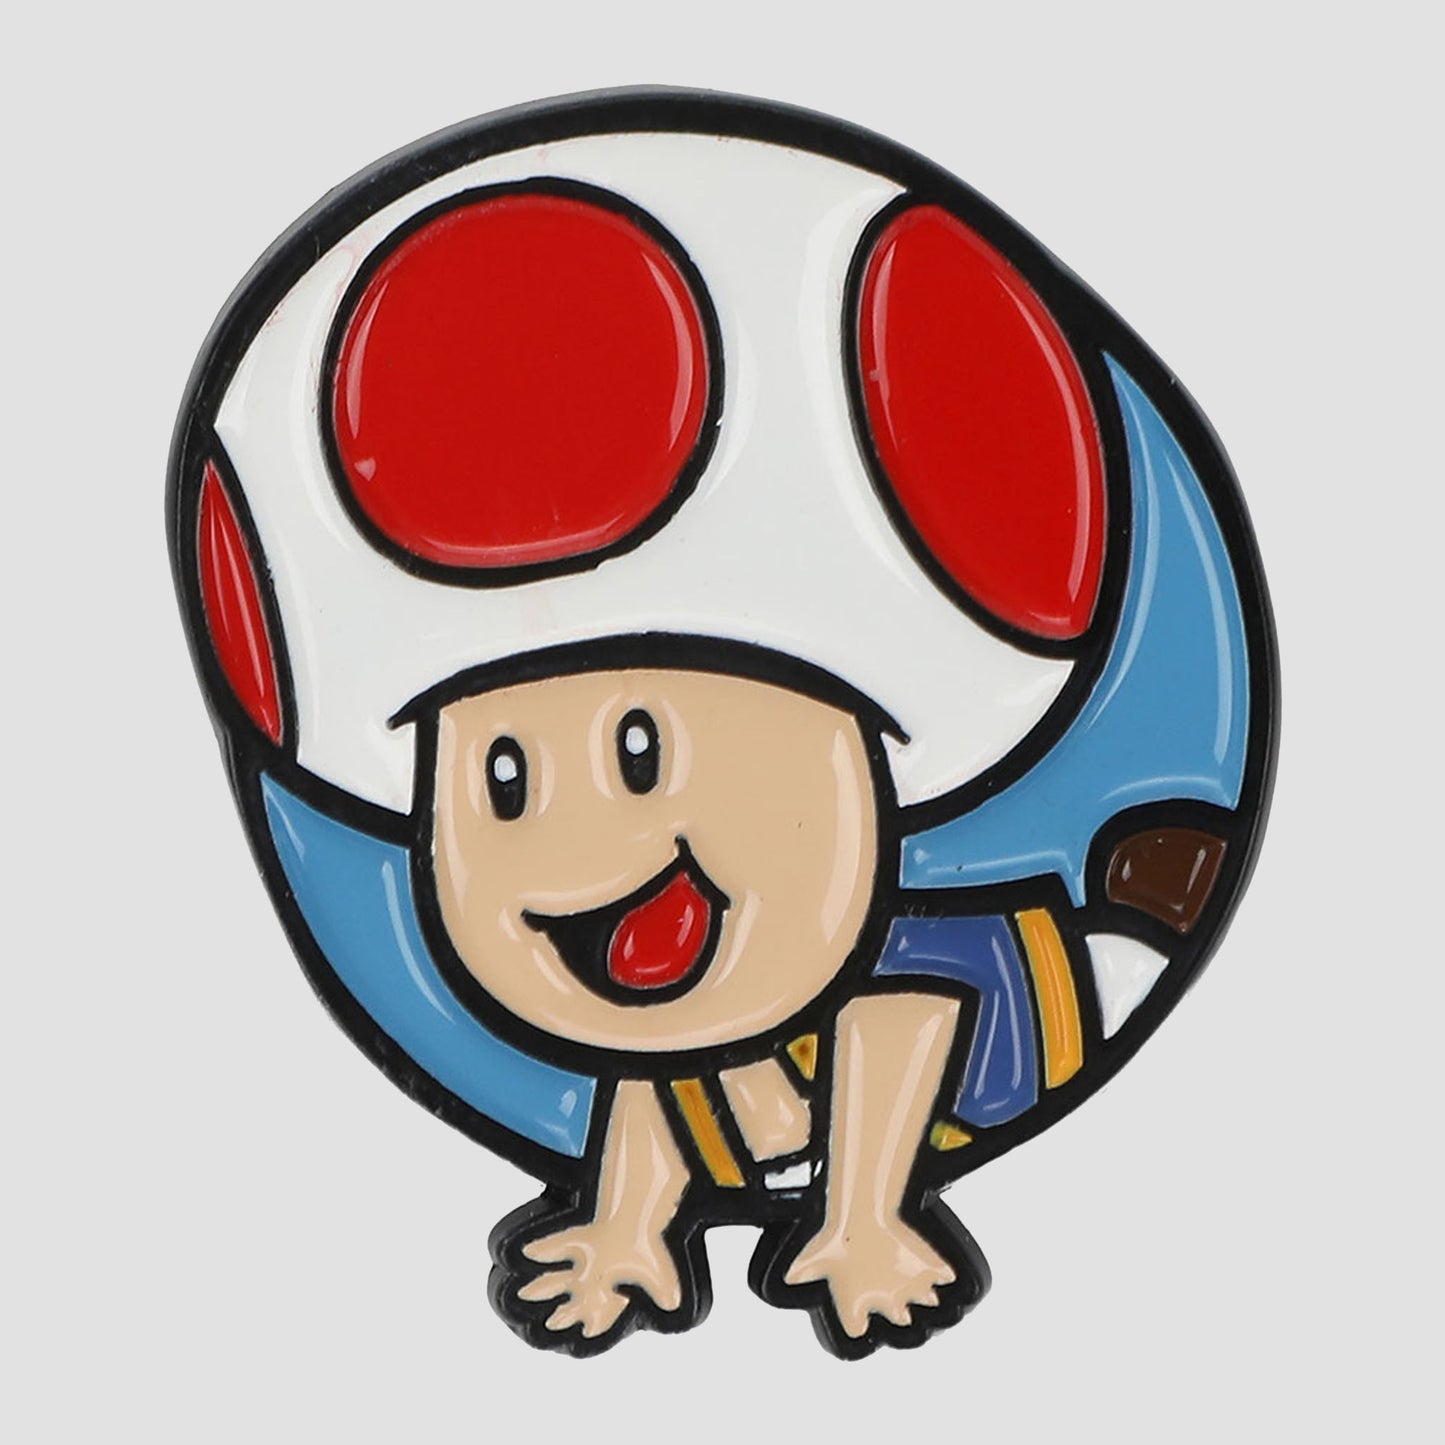 Load image into Gallery viewer, Super Mario Bros. Enamel Pin Set
